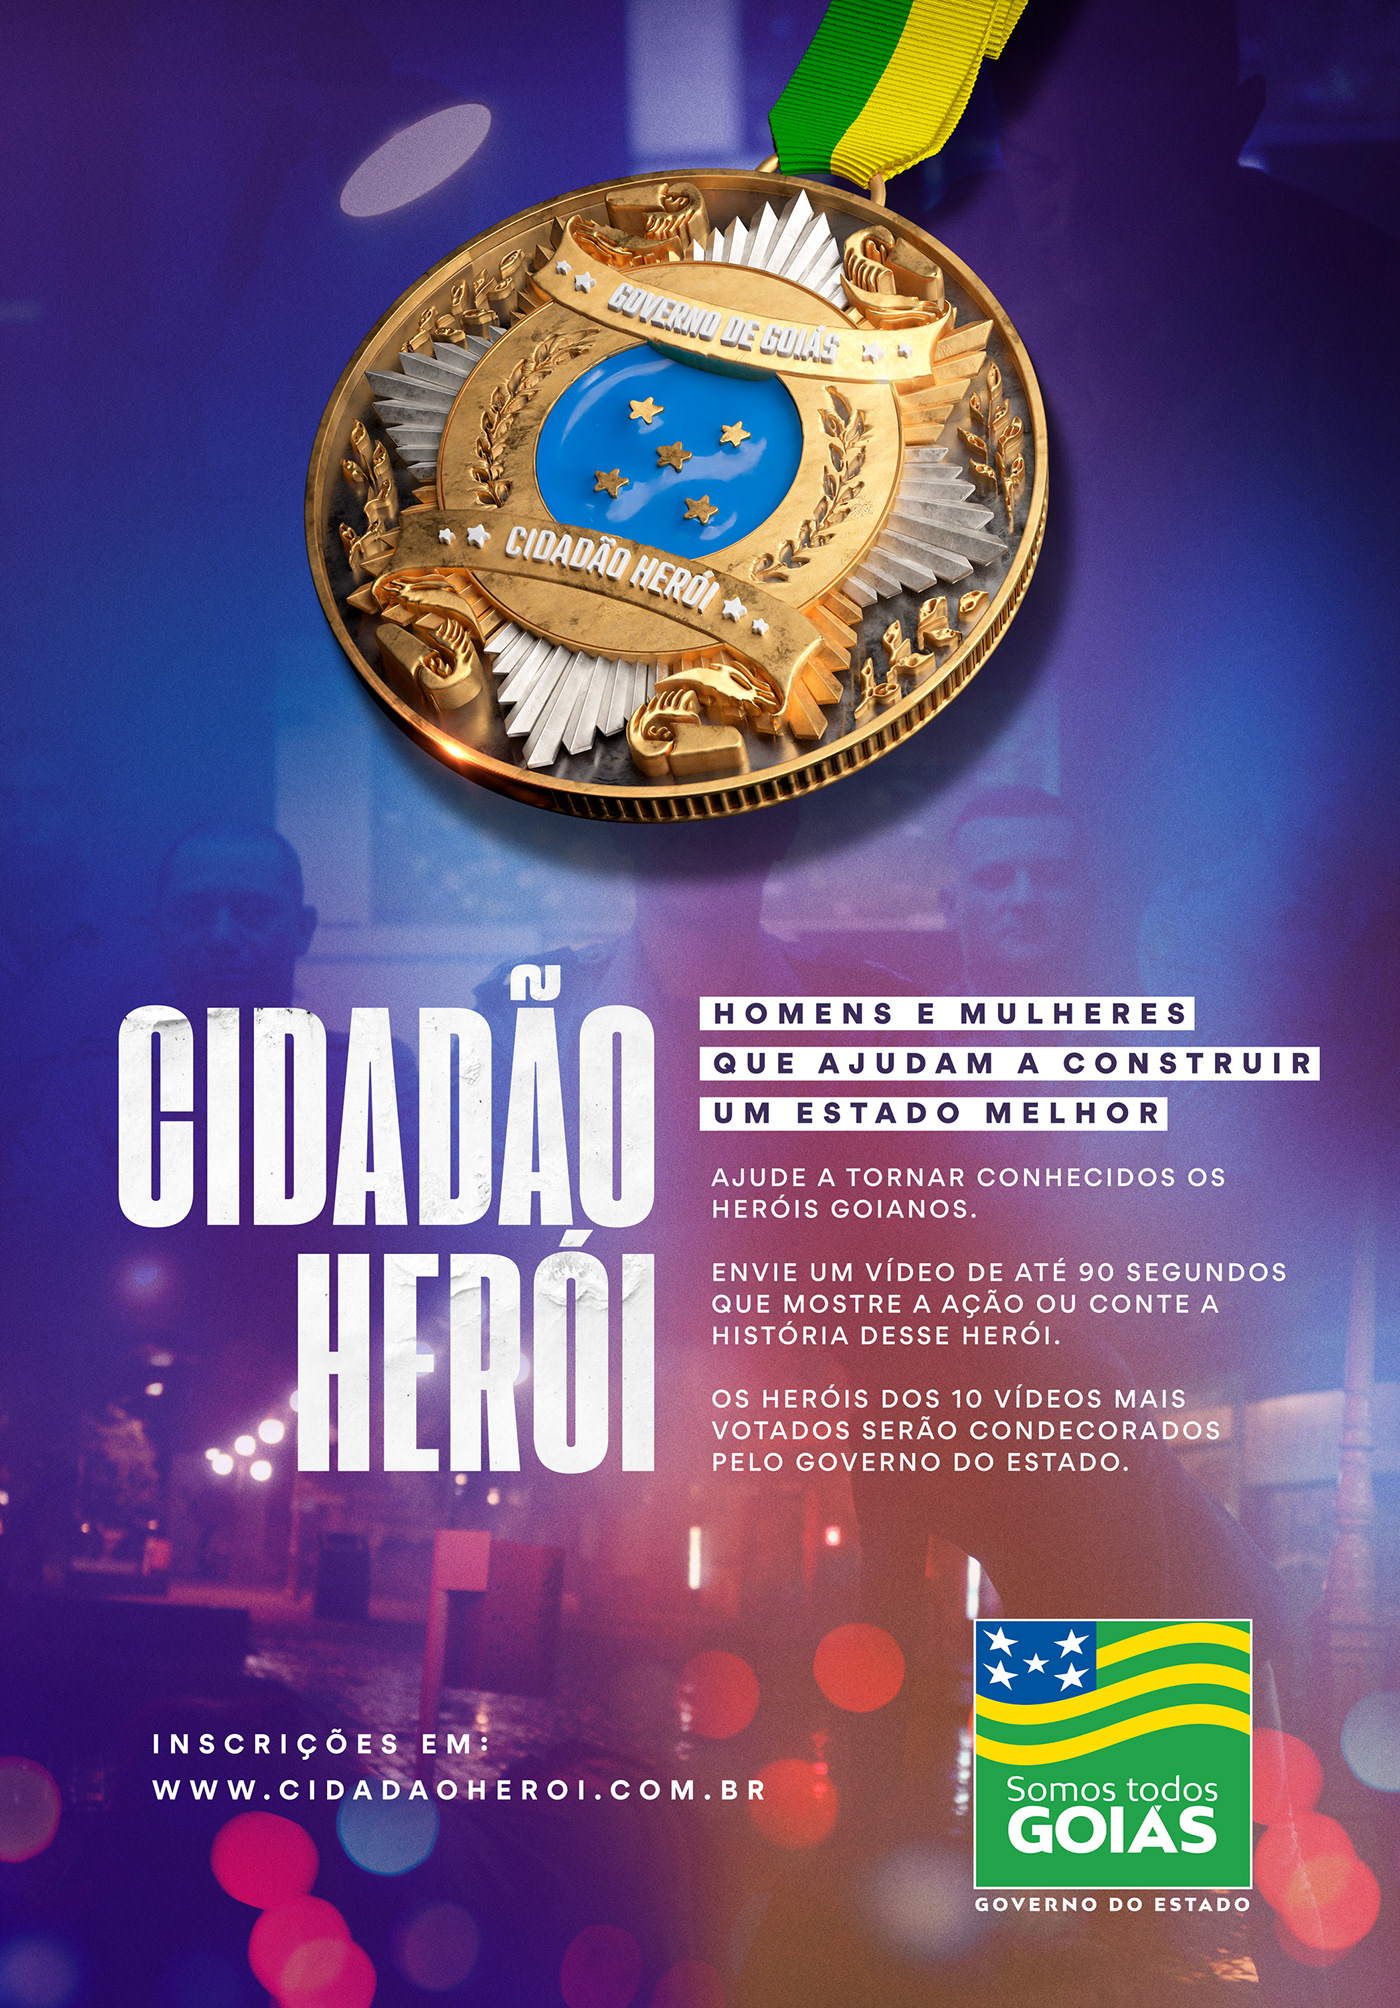 cidadão herói Comenda Goiás goiânia heroísmo retouch 3D social media Hero Citizen Hero